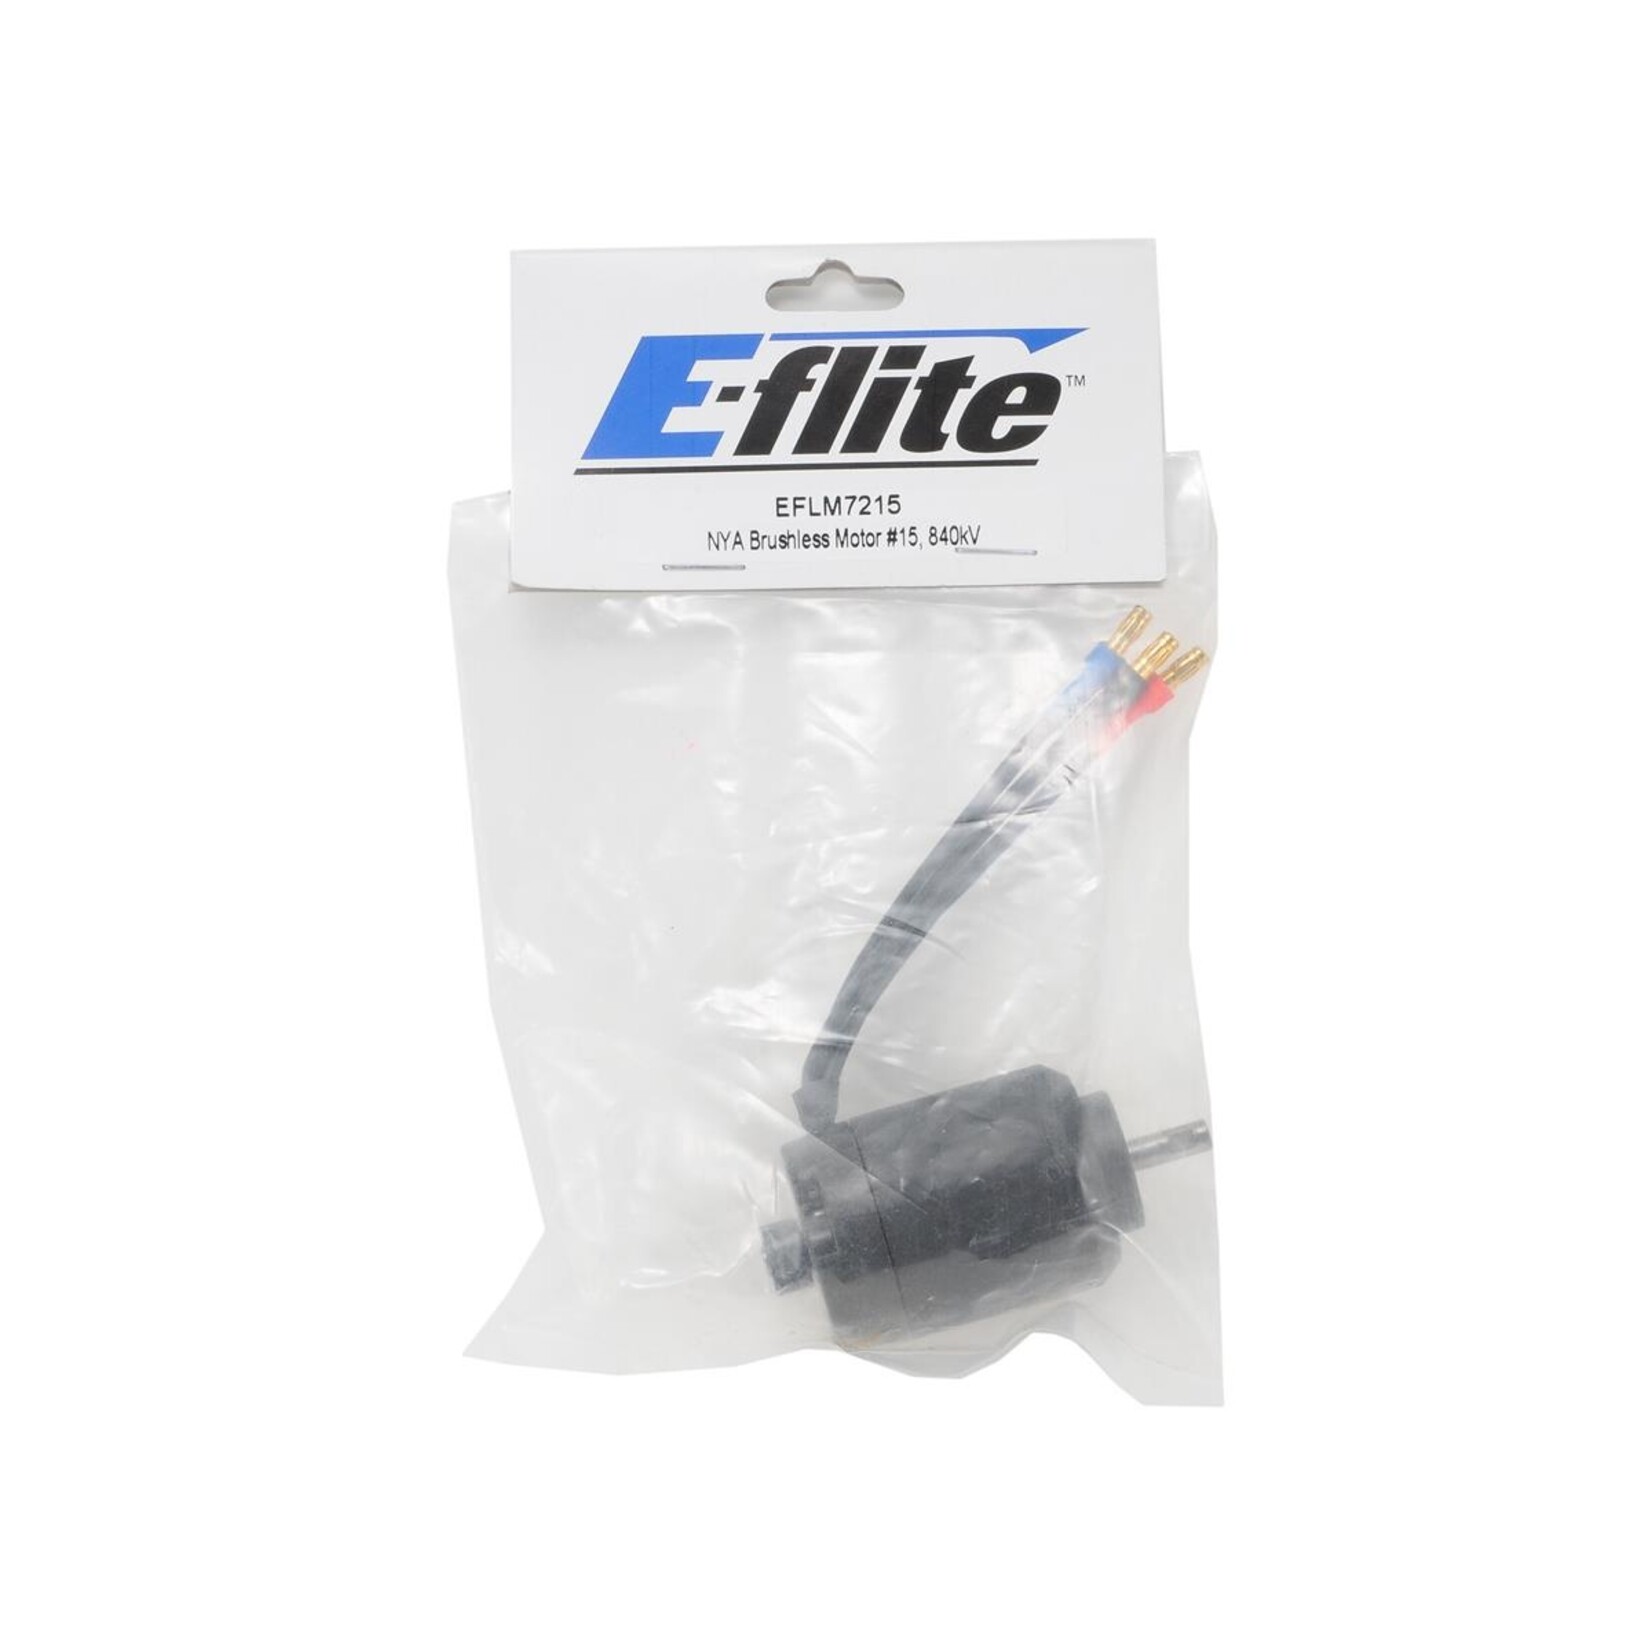 E-flite E-flite Brushless Outrunner Motor (840Kv) #EFLM7215